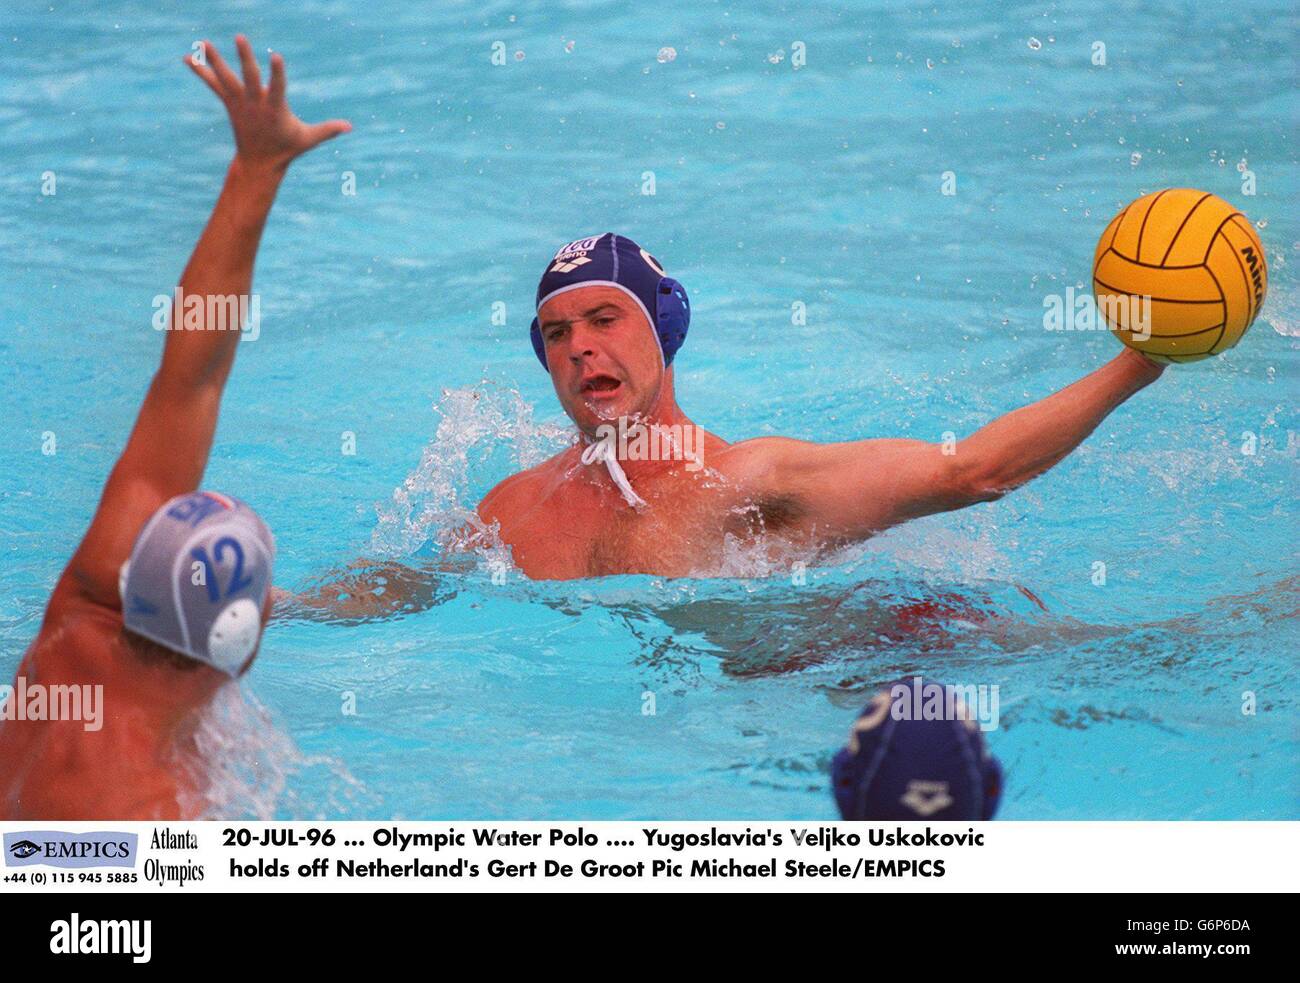 20-JUL-96 ... Olympic Wasser Polo .... Der jugoslawische Veljko Uskokovic hält den Niederländer Gert De Groot zurück Stockfoto